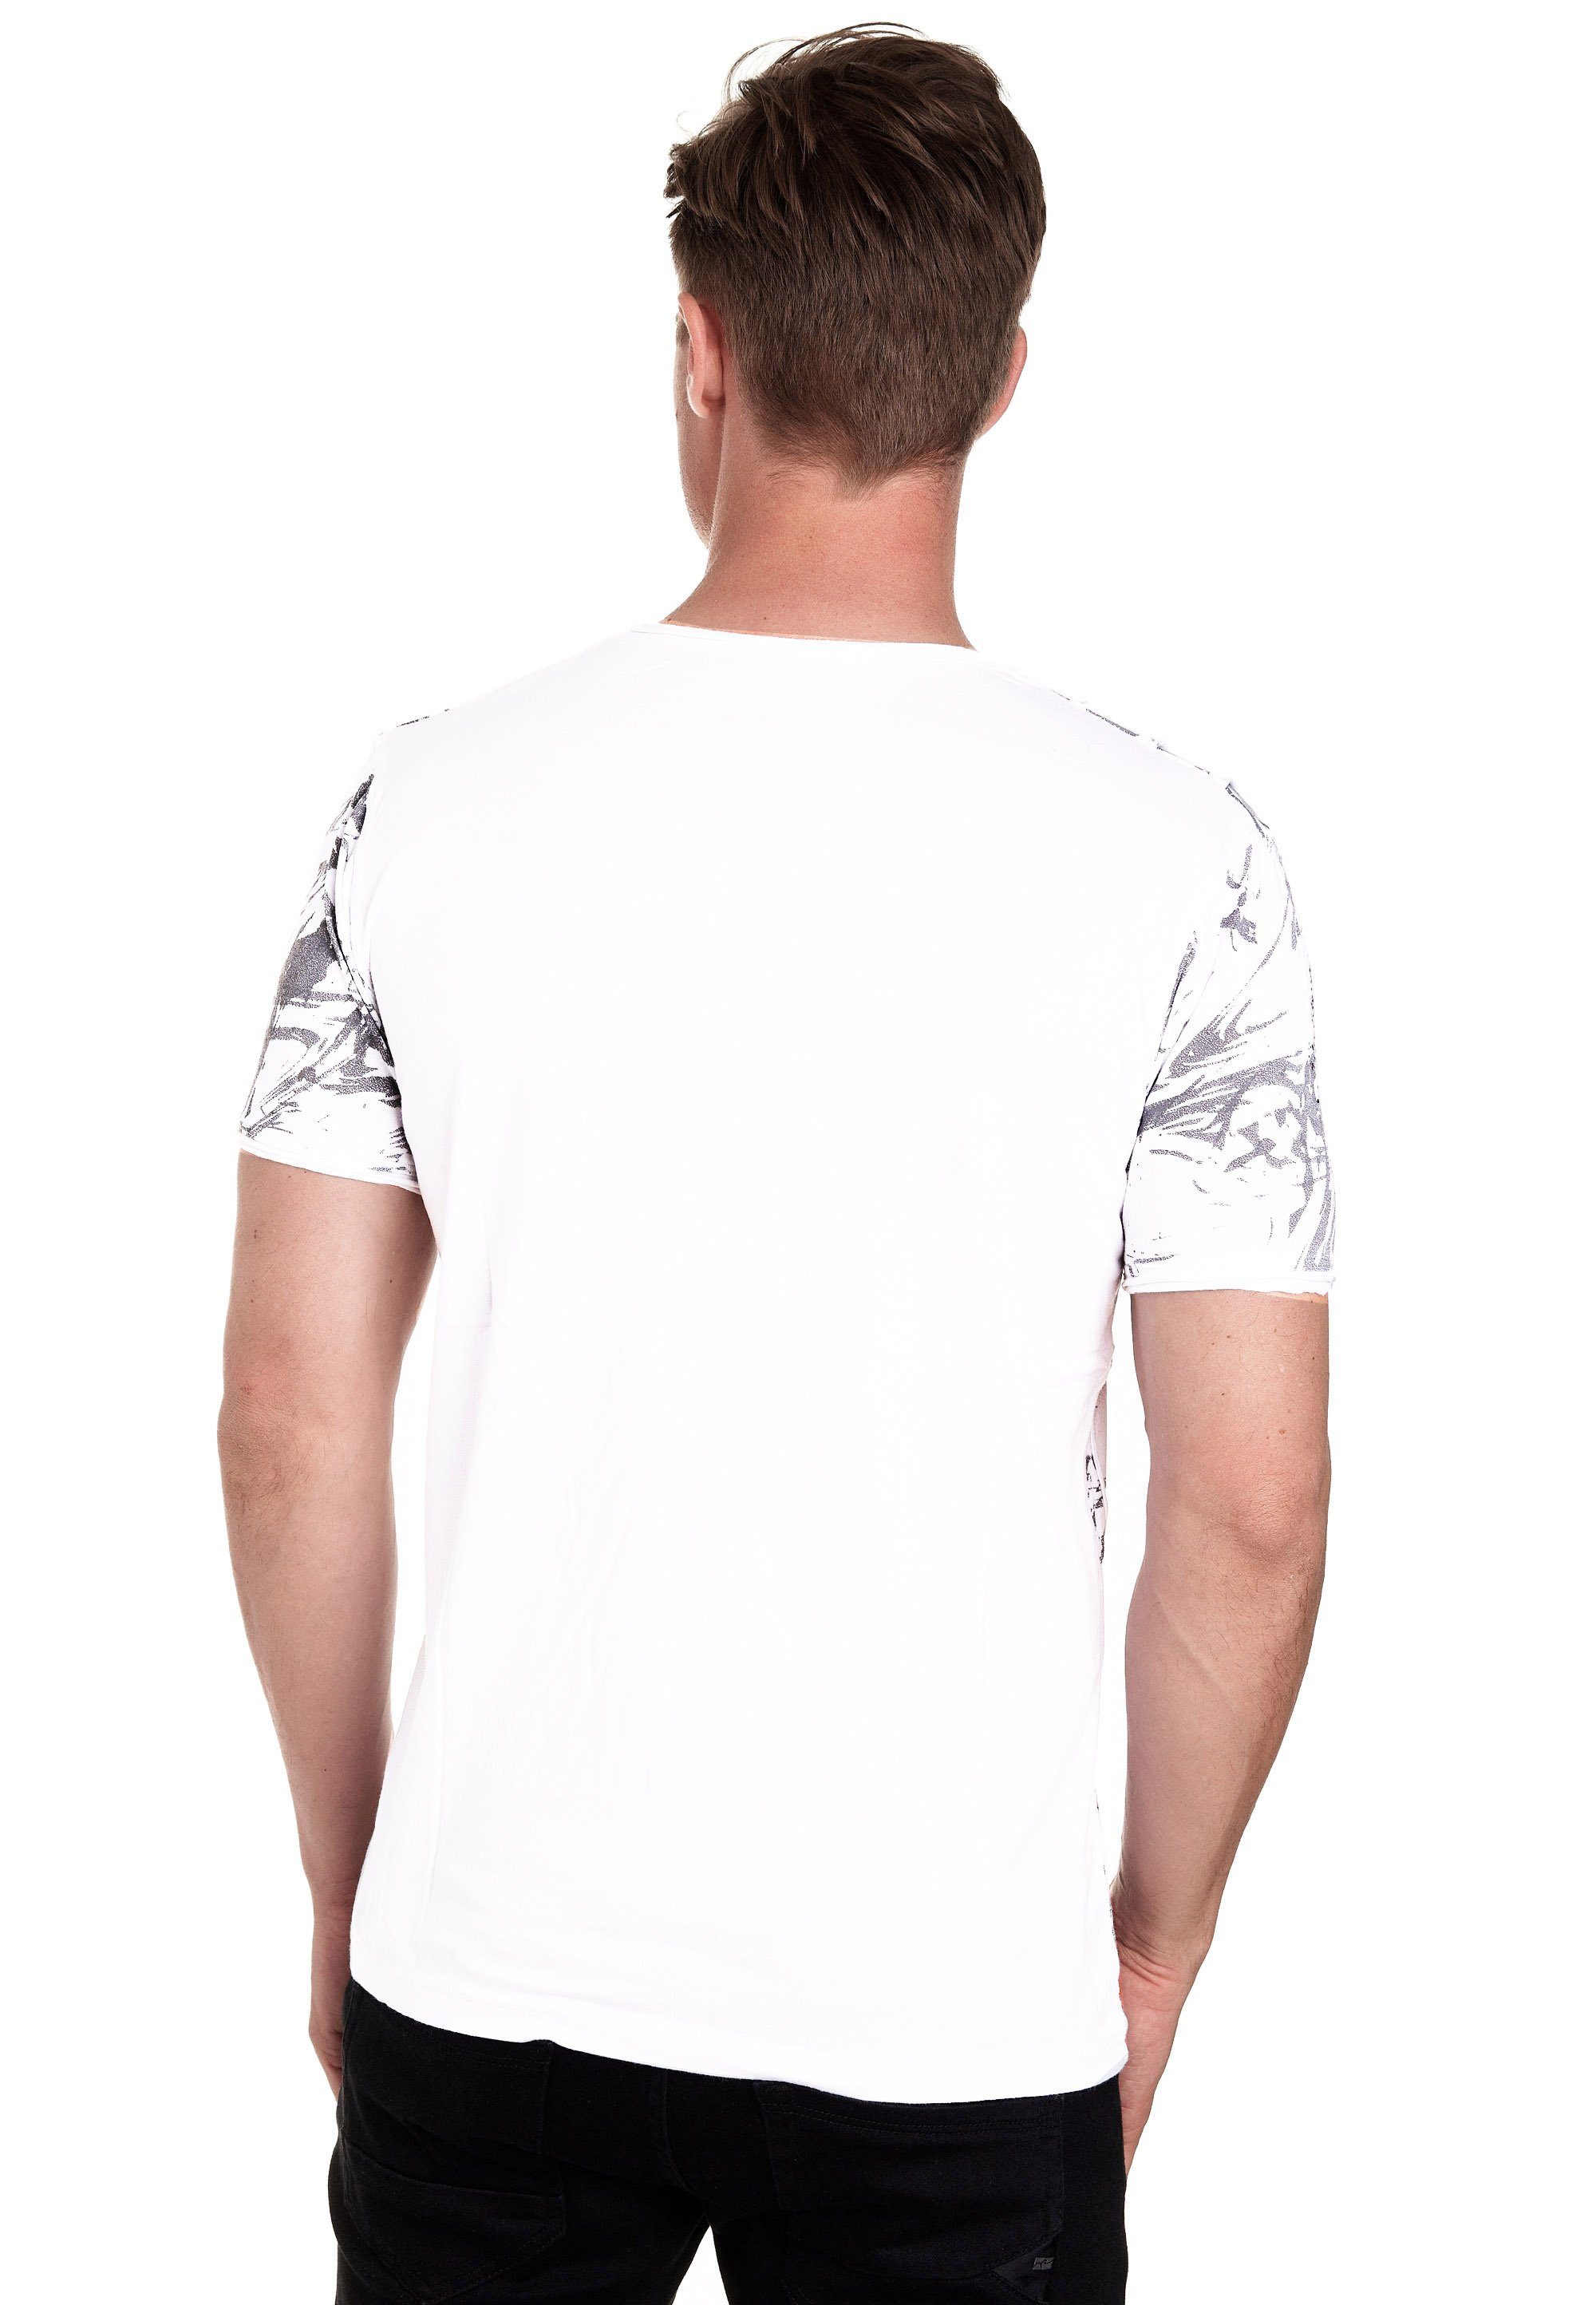 Rusty Neal Strass-Design mit aufwendigem weiß T-Shirt